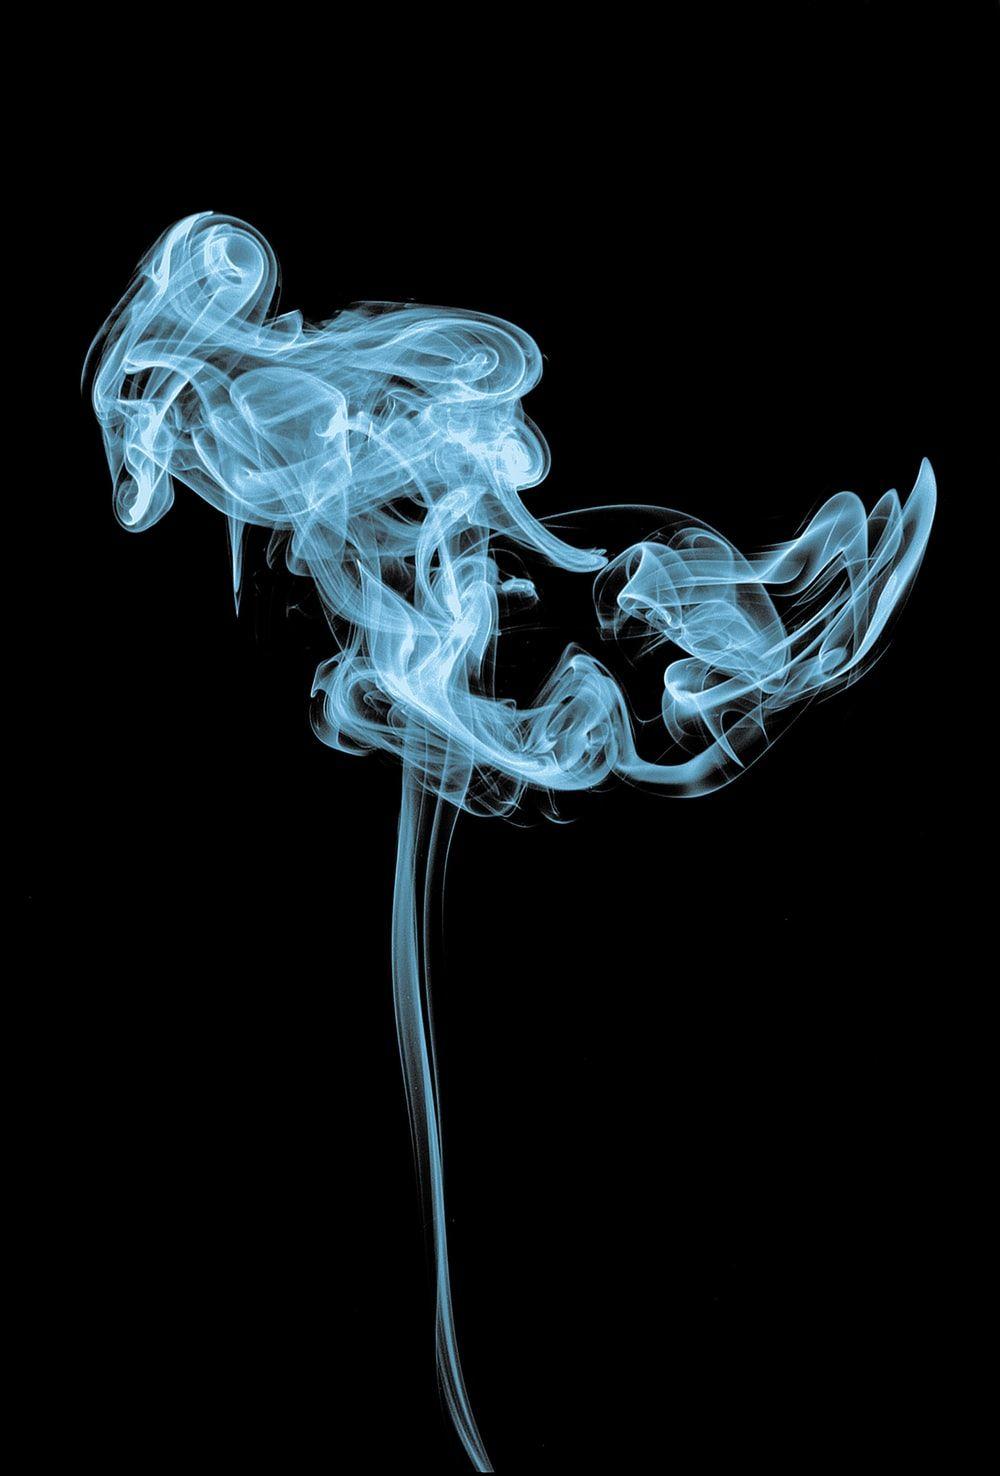 Aesthetic Smoke Wallpapers - Top Free Aesthetic Smoke Backgrounds